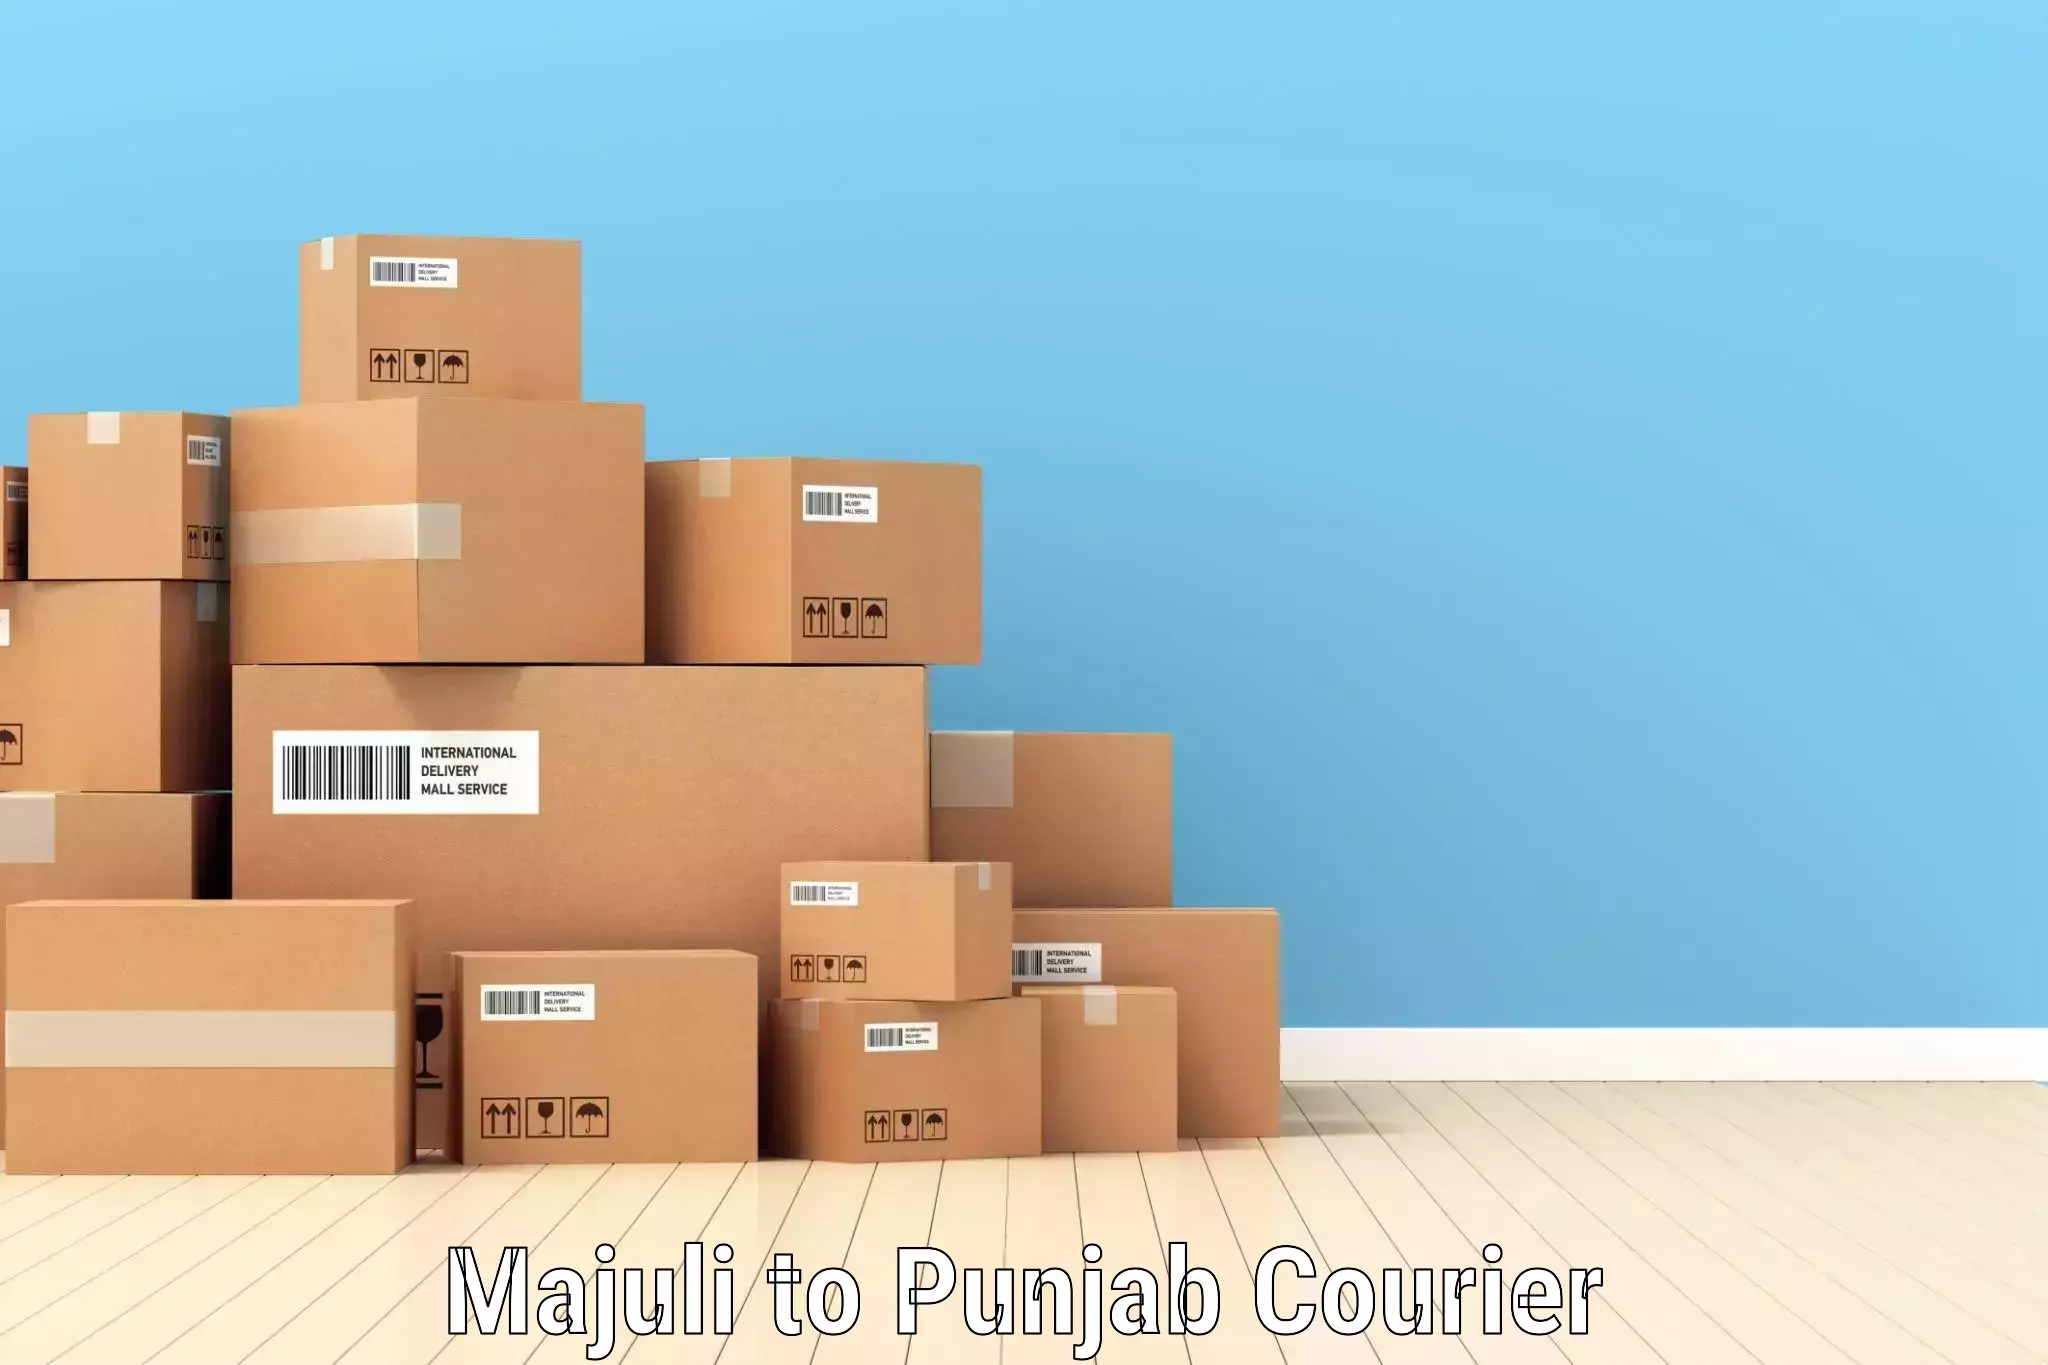 Customer-centric shipping in Majuli to Giddarbaha